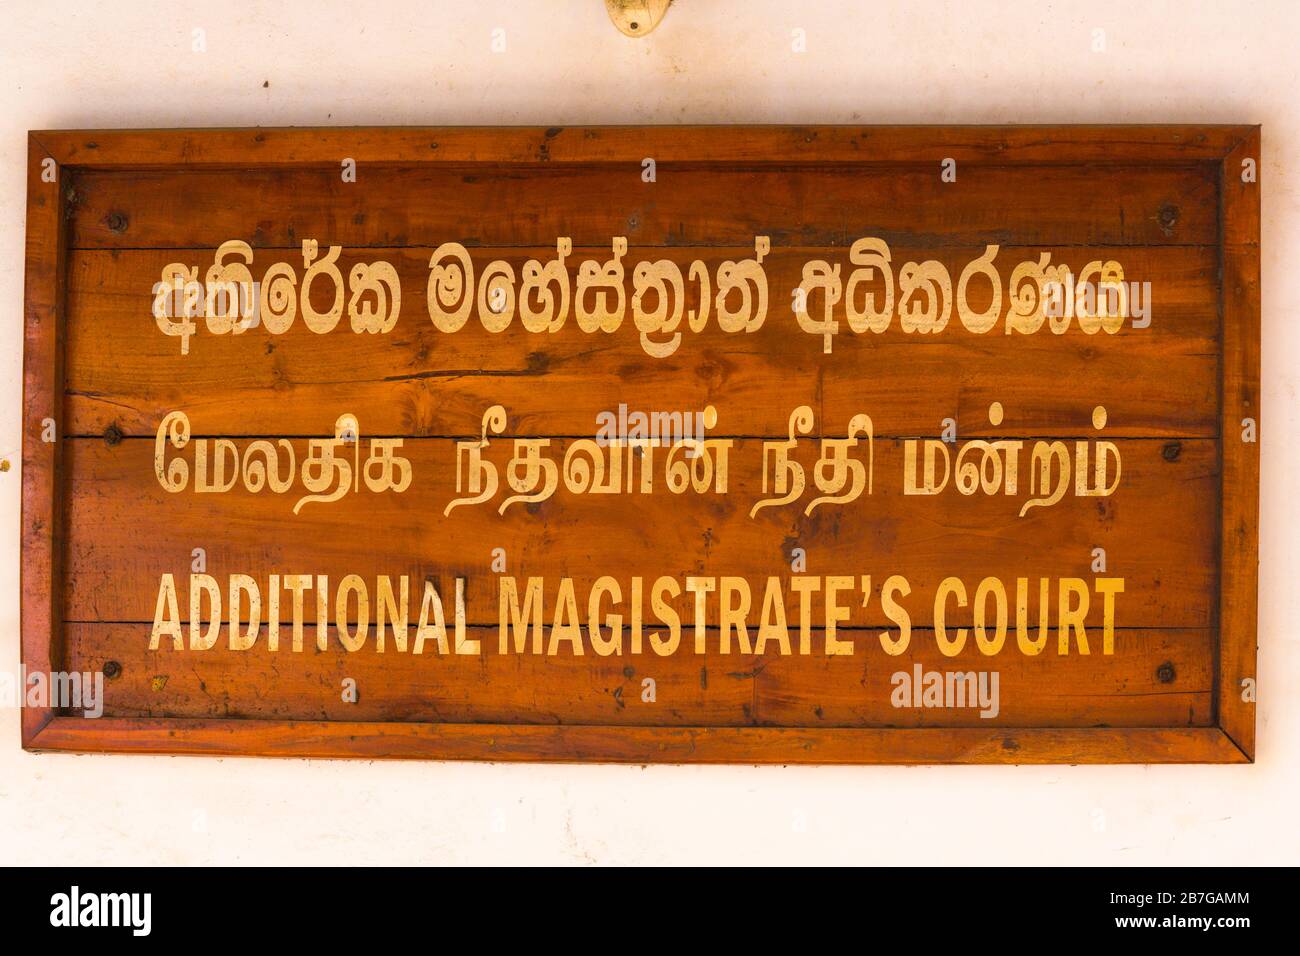 Südasien Sri Lanka Fort Galle koloniale Stadtzentrum alte alte alte Hafen Hafenschild Holz Gold Schriftzug drei Sprachen zusätzliche Magistrate Gericht Stockfoto